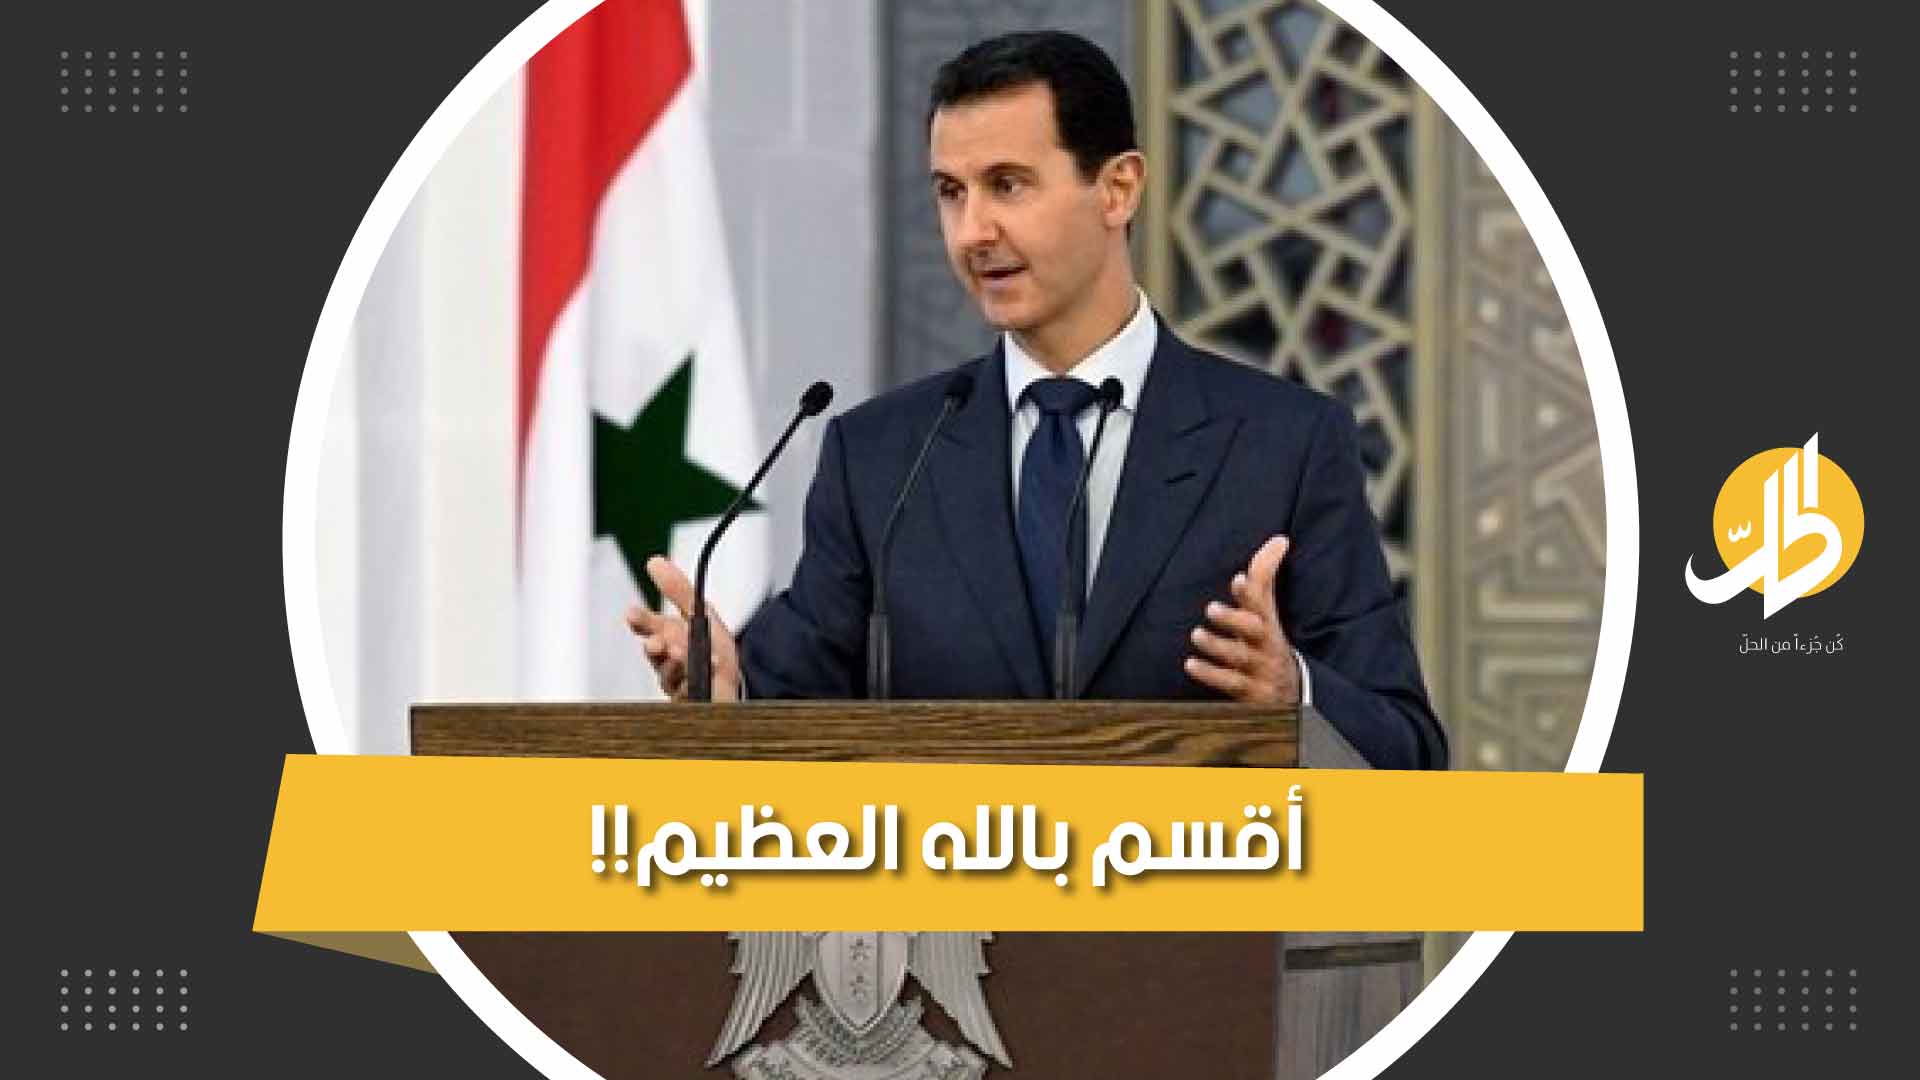 عندما أقسم الأسد على صون كرامة بلاده